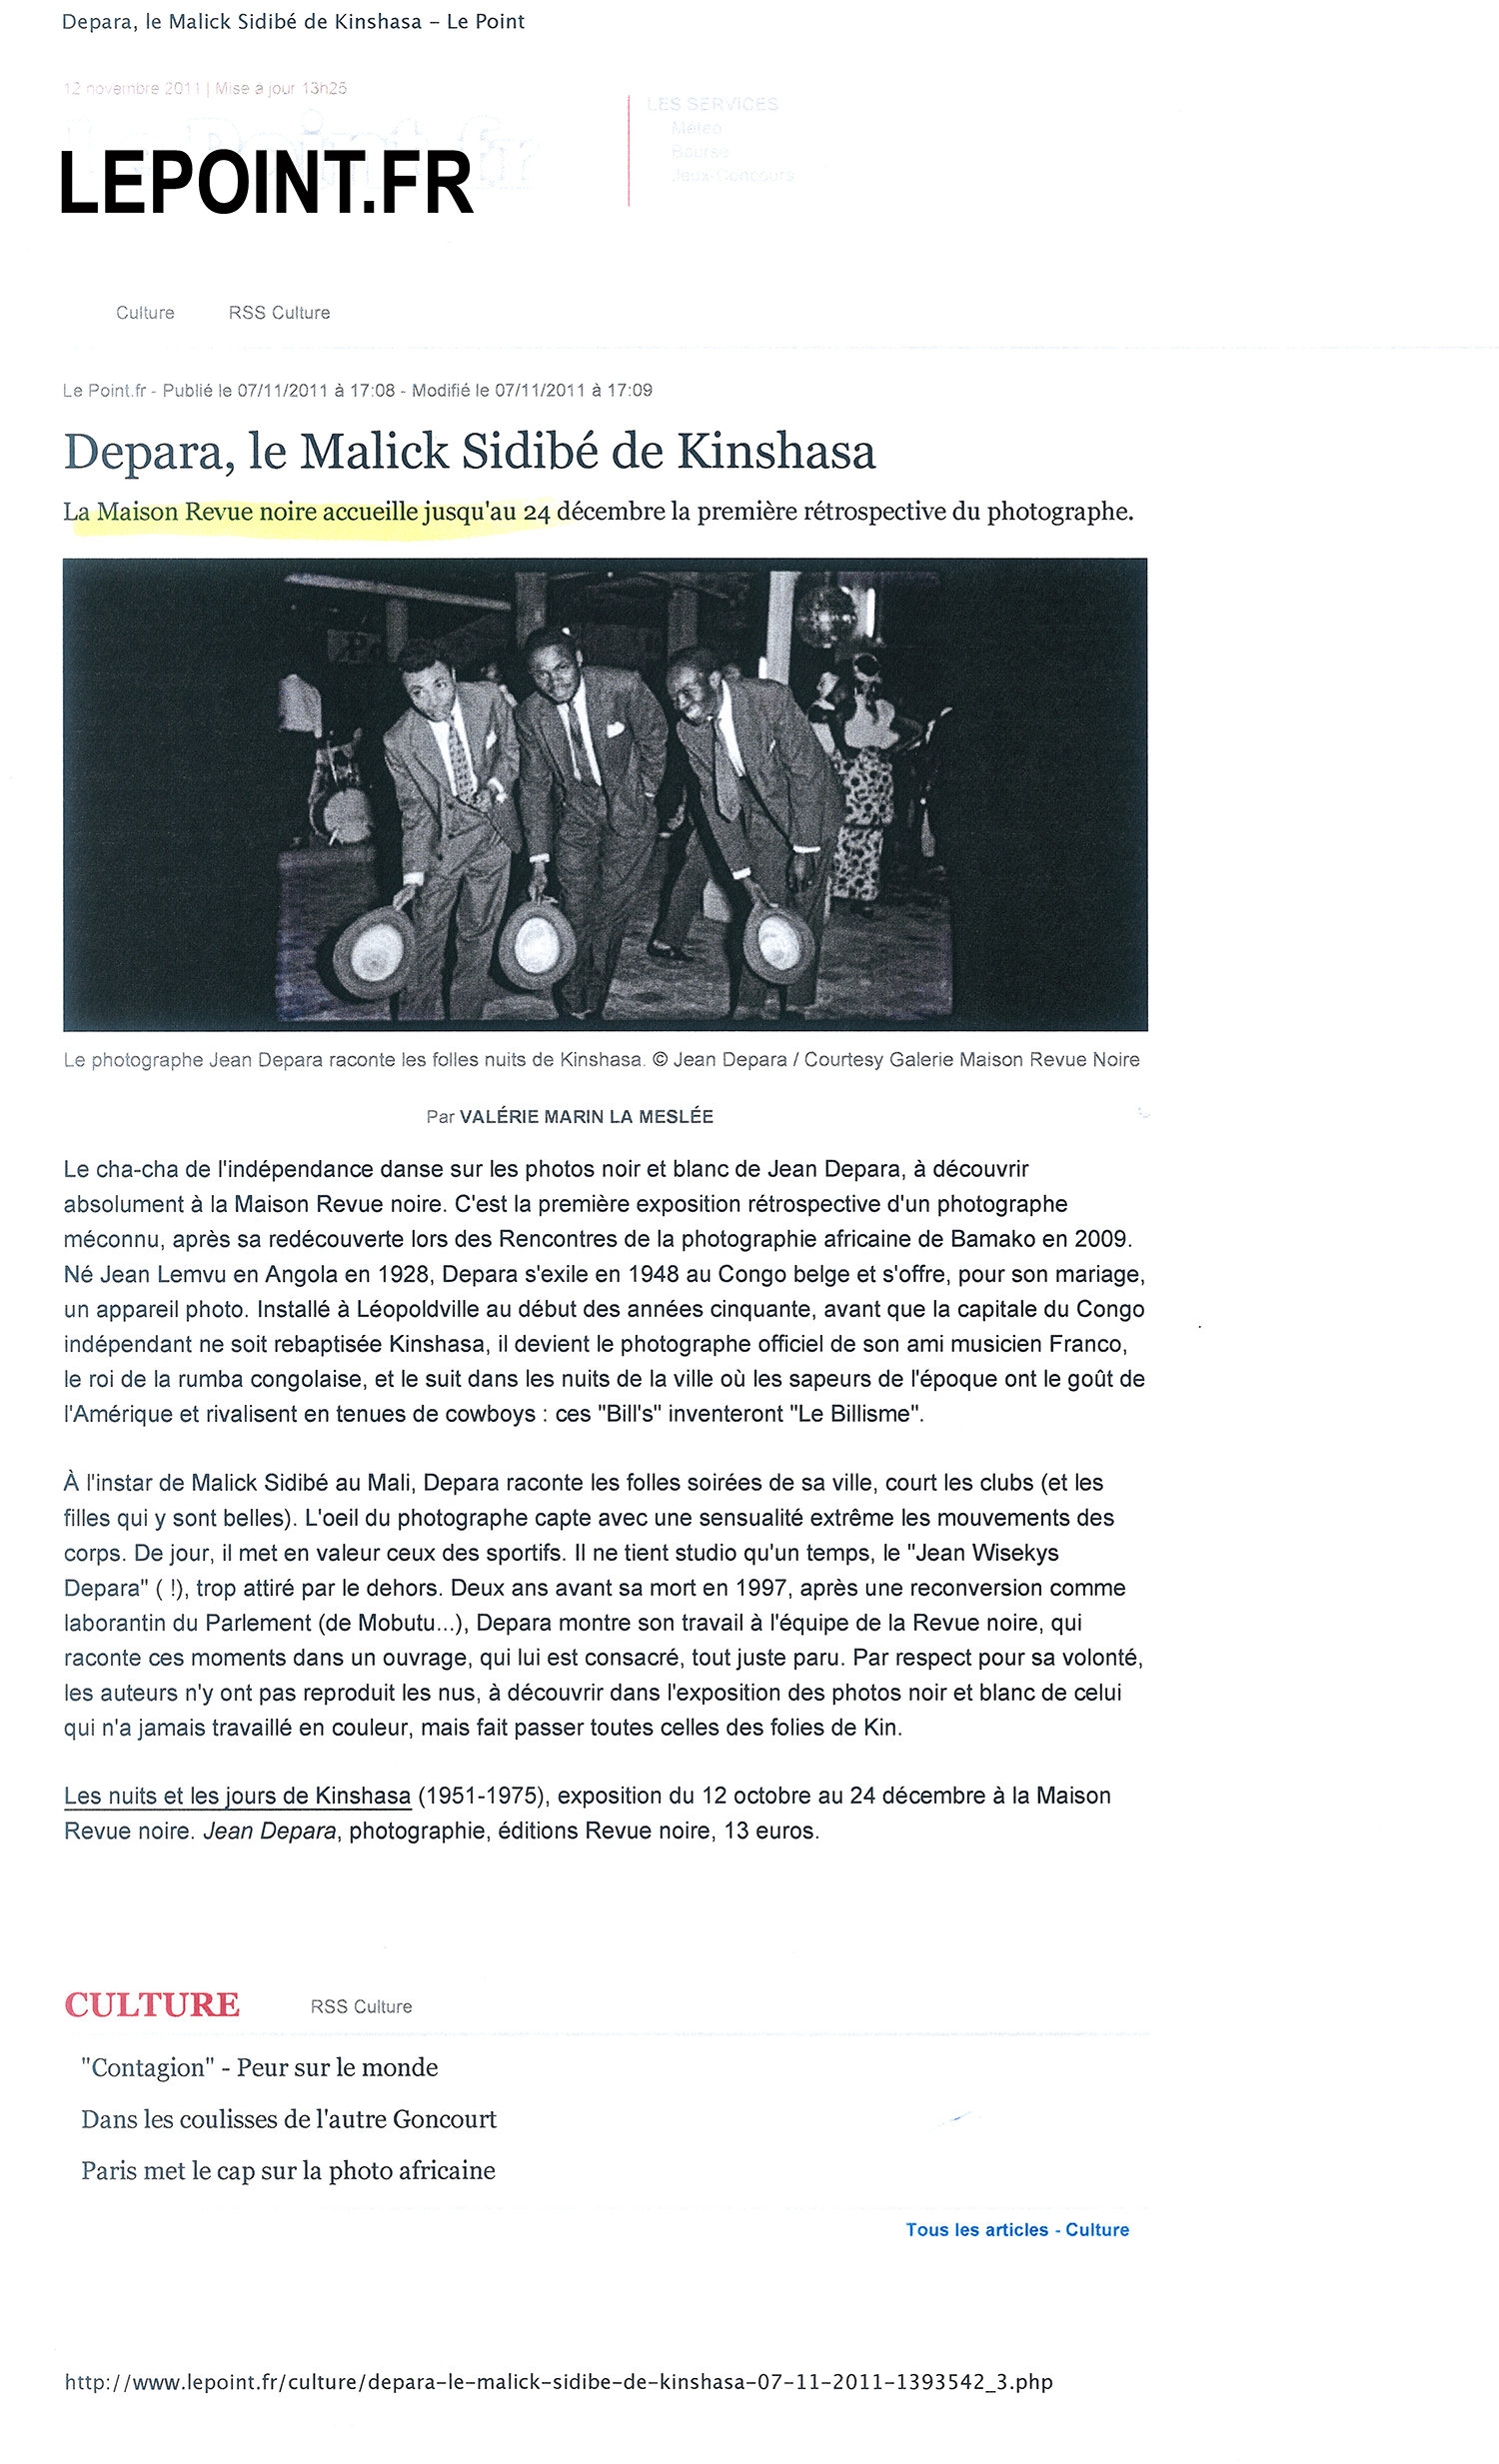 Revue Noire revue de presse Le Point.fr : Depara, le Malick Sidibé de Kinshasa, RDCongo, 1955-1965, livre et expo de Revue Noire